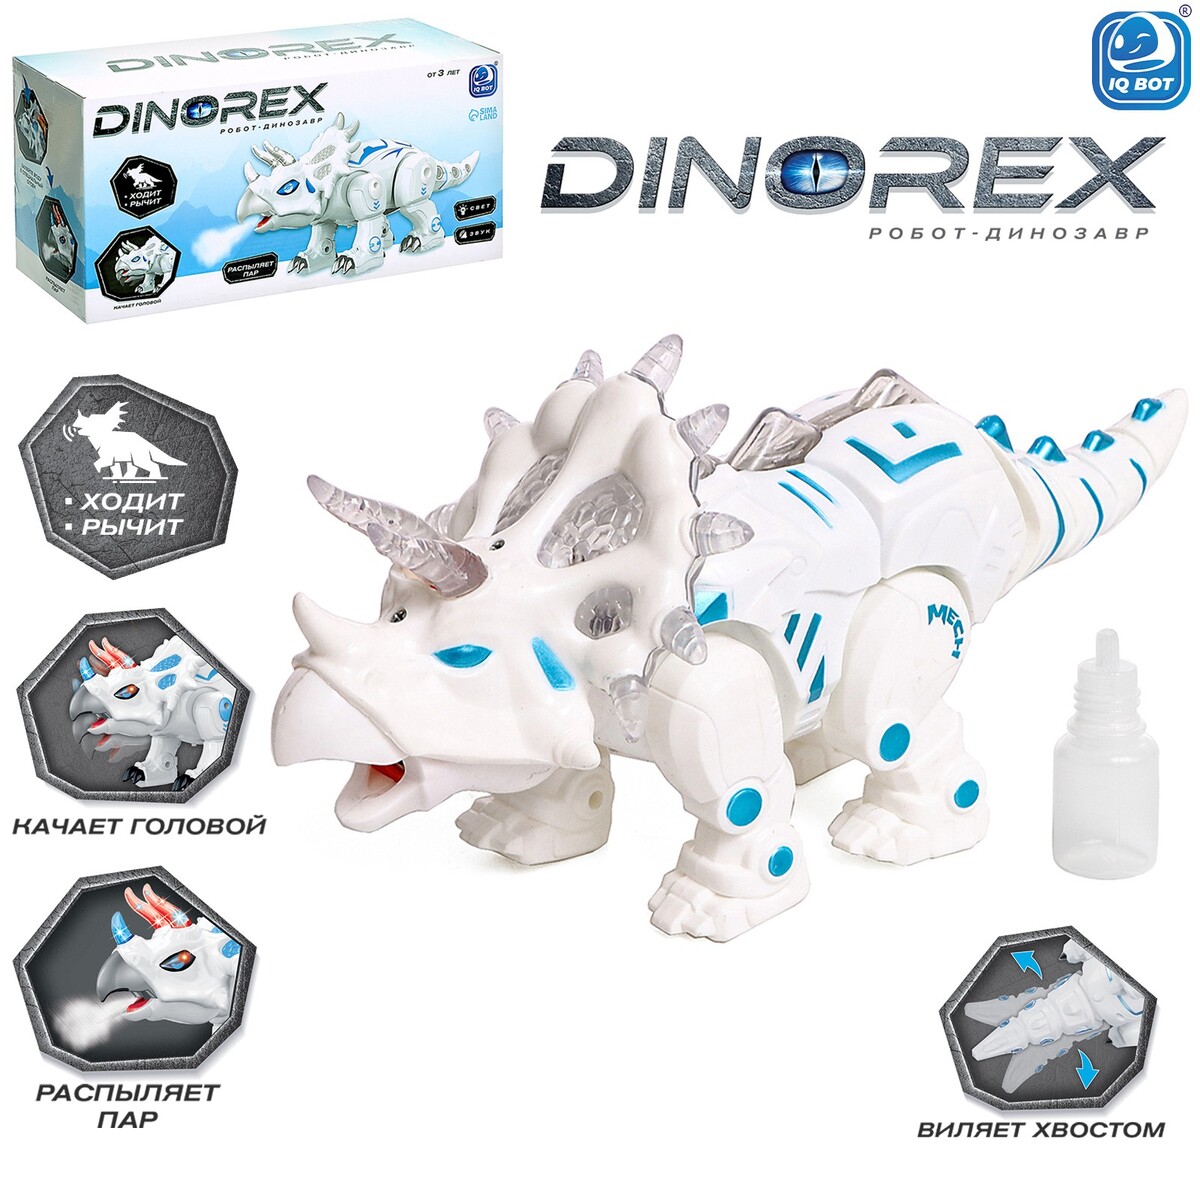 Робот динозавр dinorex iq bot, интерактивный: световые и звуковые эффекты, на батарейках junfa дино робот огнедышащий звуковые и световые эффекты